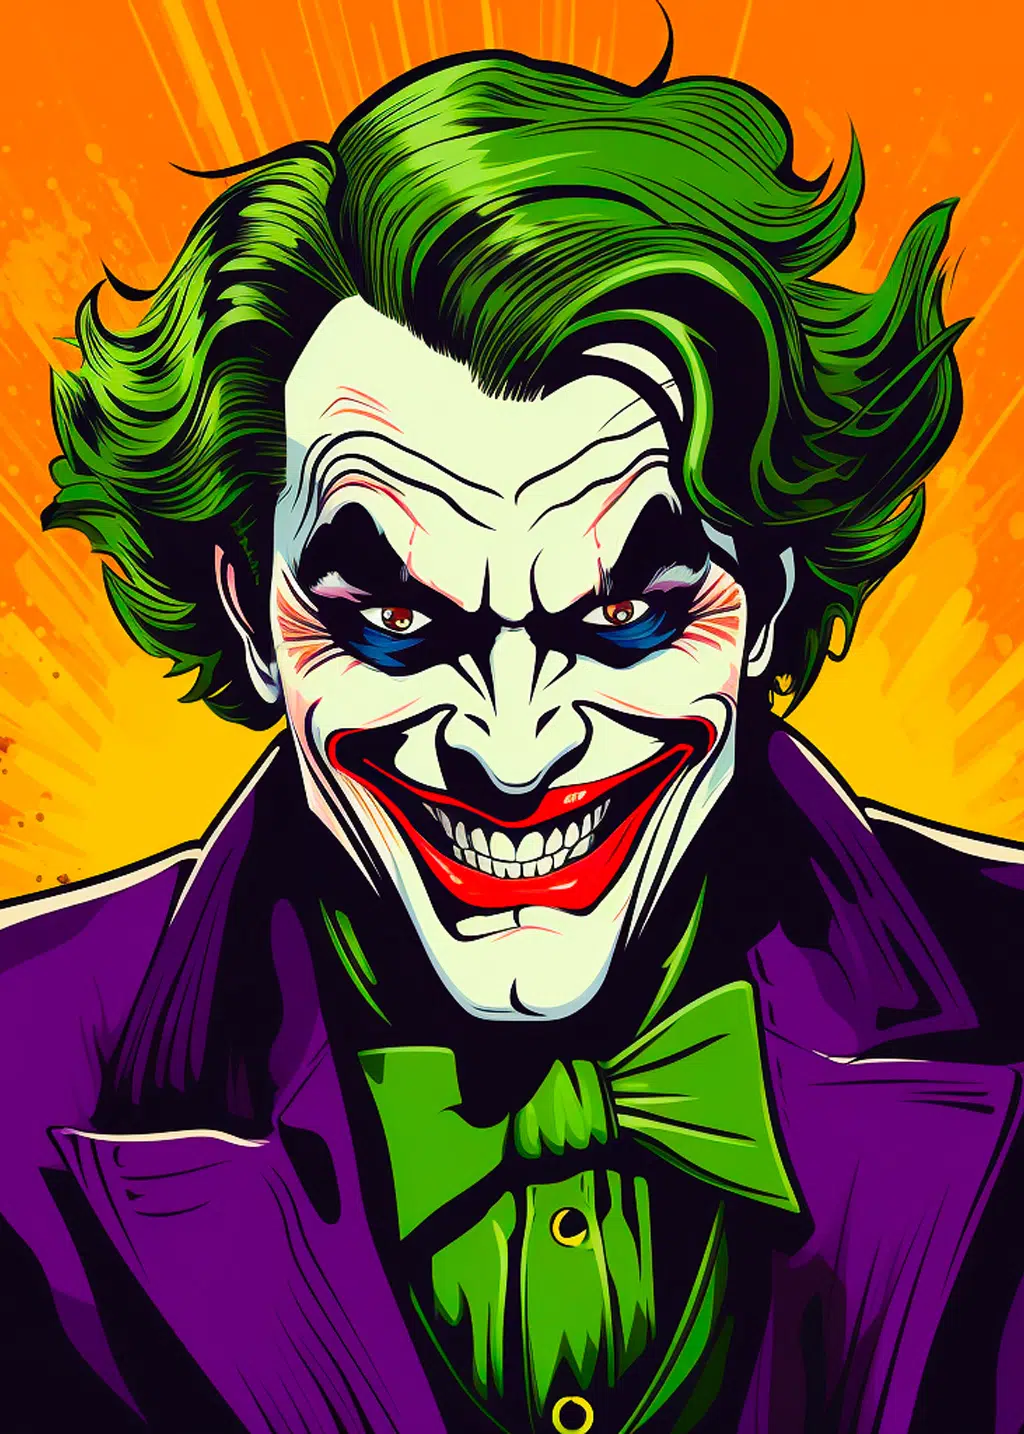 Joker’s Smile